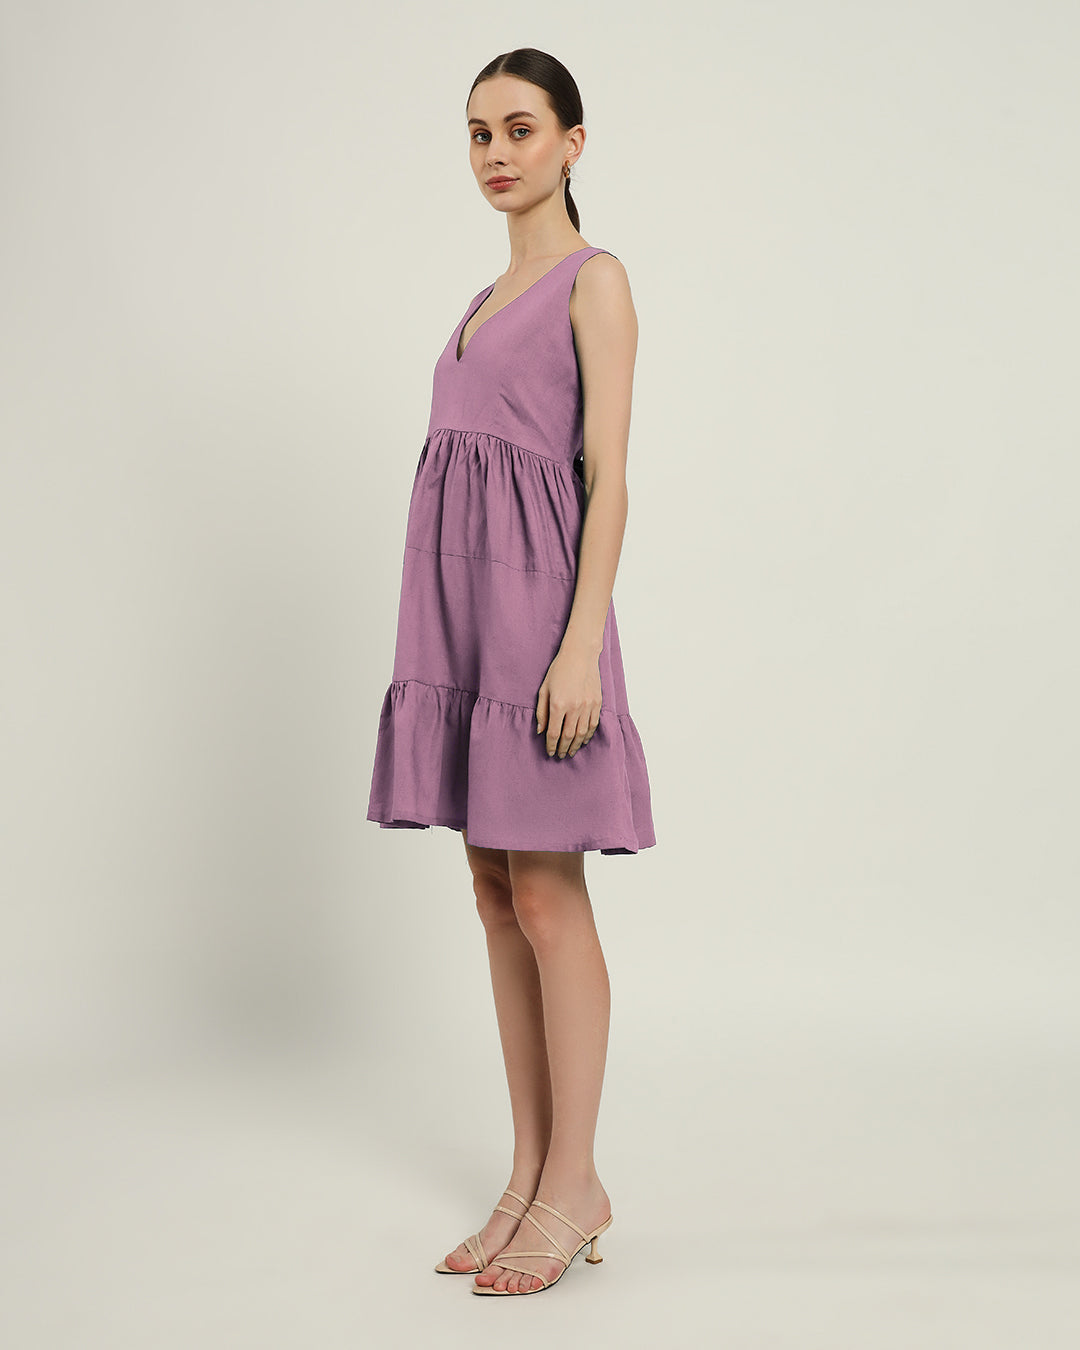 The Minsk Purple Swirl Cotton Dress